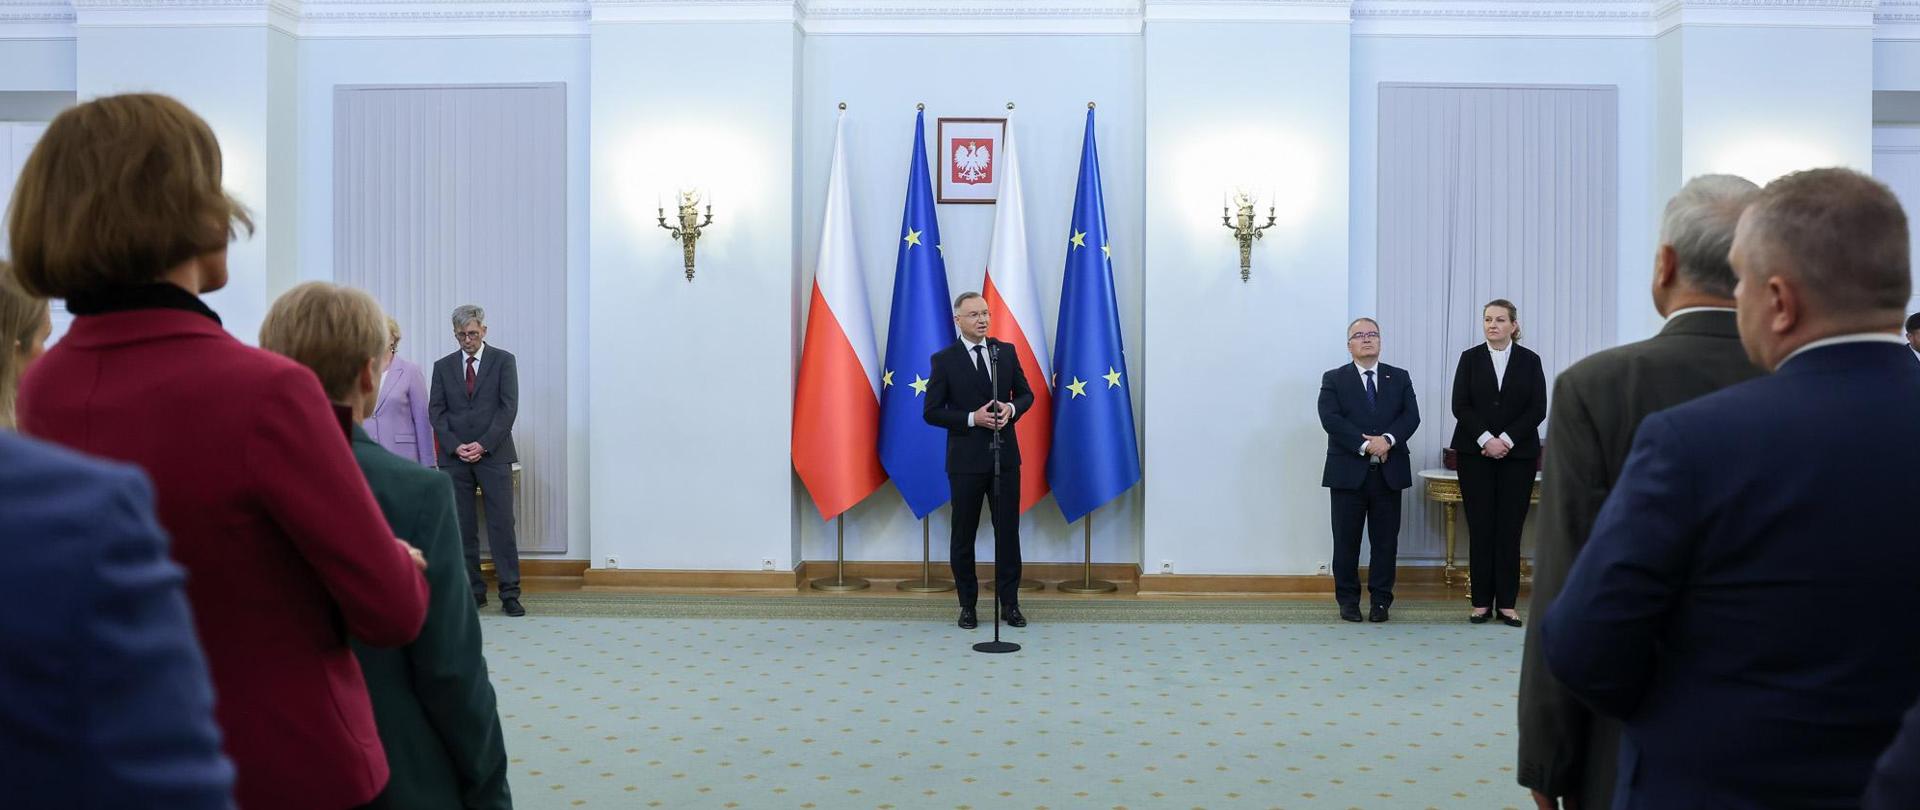 Widok z tyłu na dużą salę, w głębi prezydent Duda stoi i mówi do mikrofonu, za nim flagi Polski i UE, przed nim widać dużo ludzi.